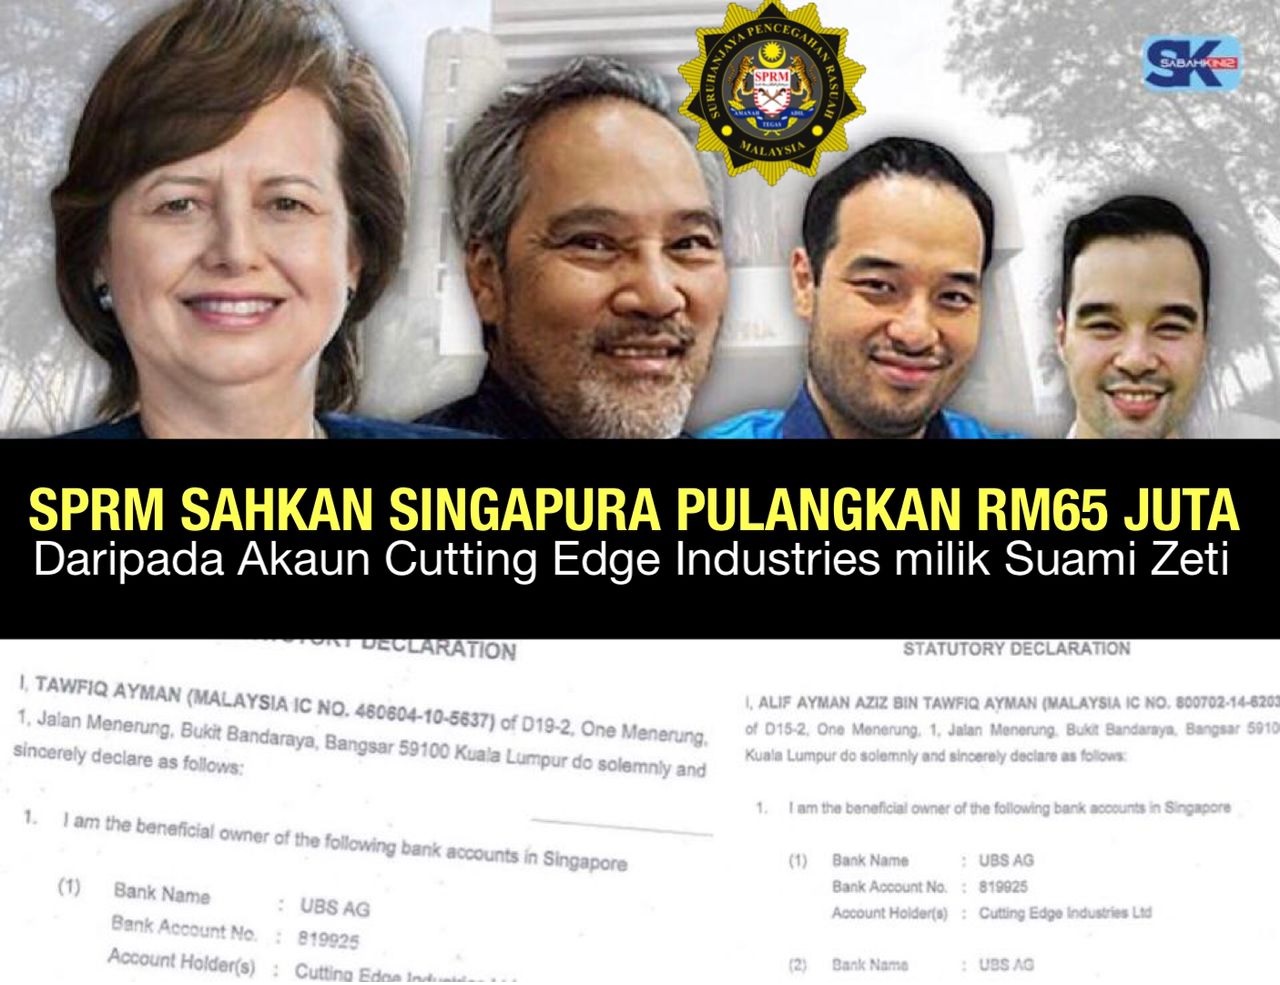 SPRM Sahkan Singapura pulangkan RM65 Juta daripada akaun Cutting Edge Industries milik suami Zeti 